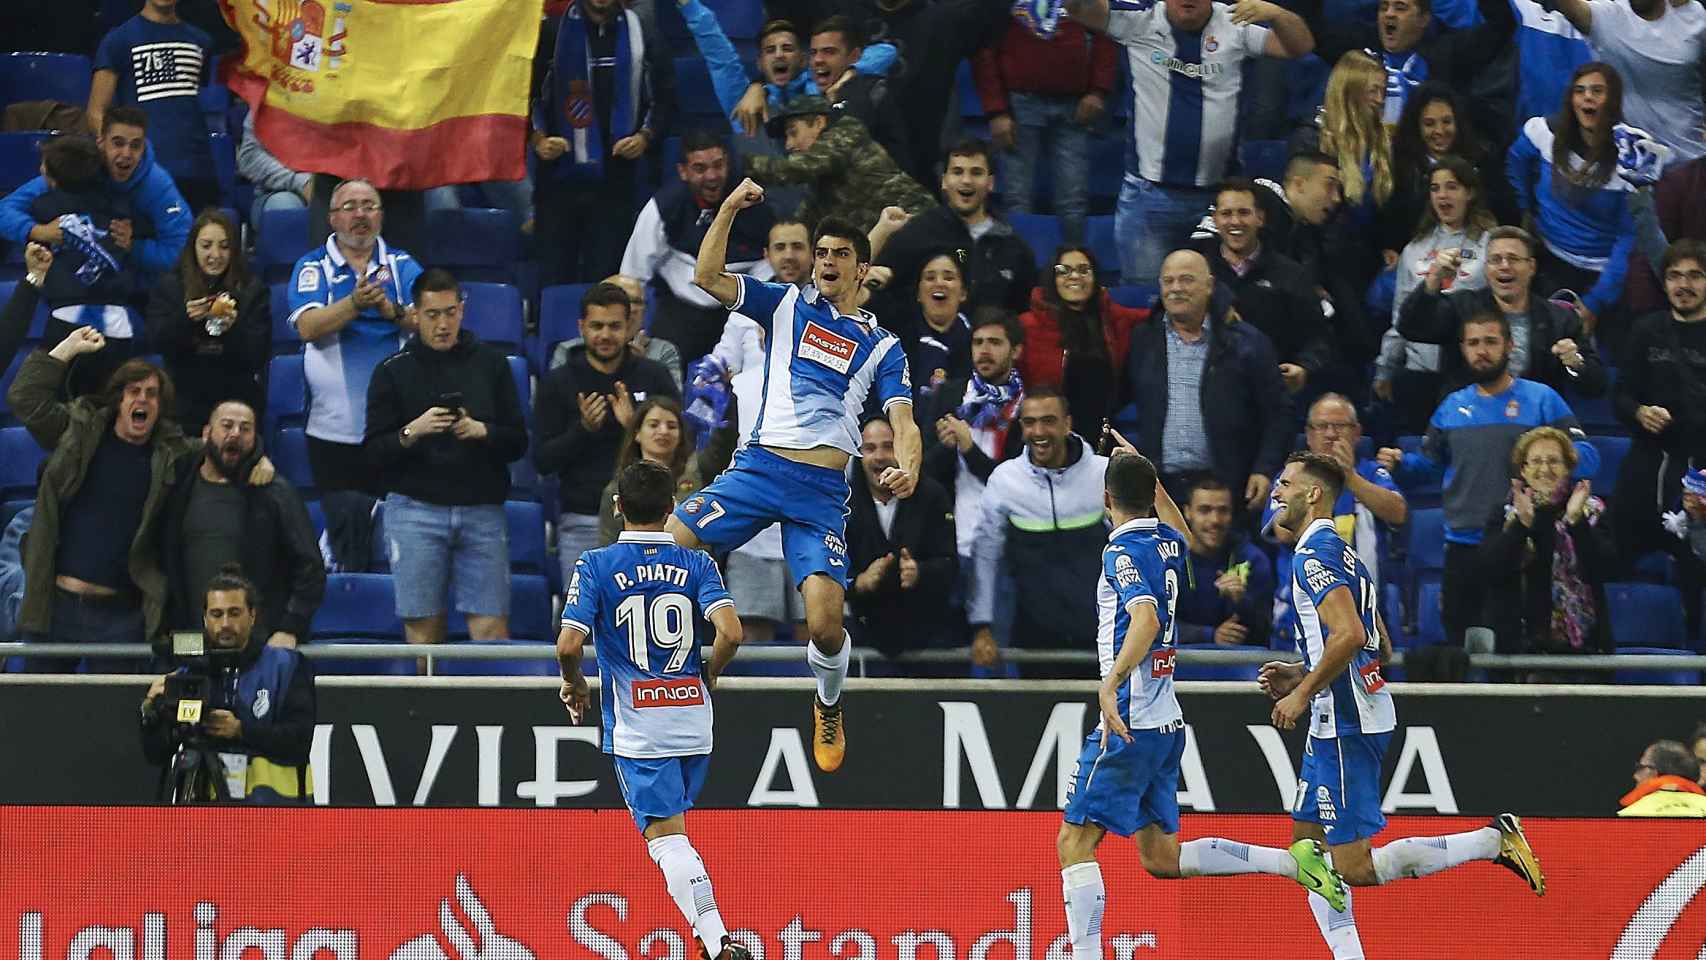 Los jugadores del Espanyol celebran un gol con una bandera de España en la grada.